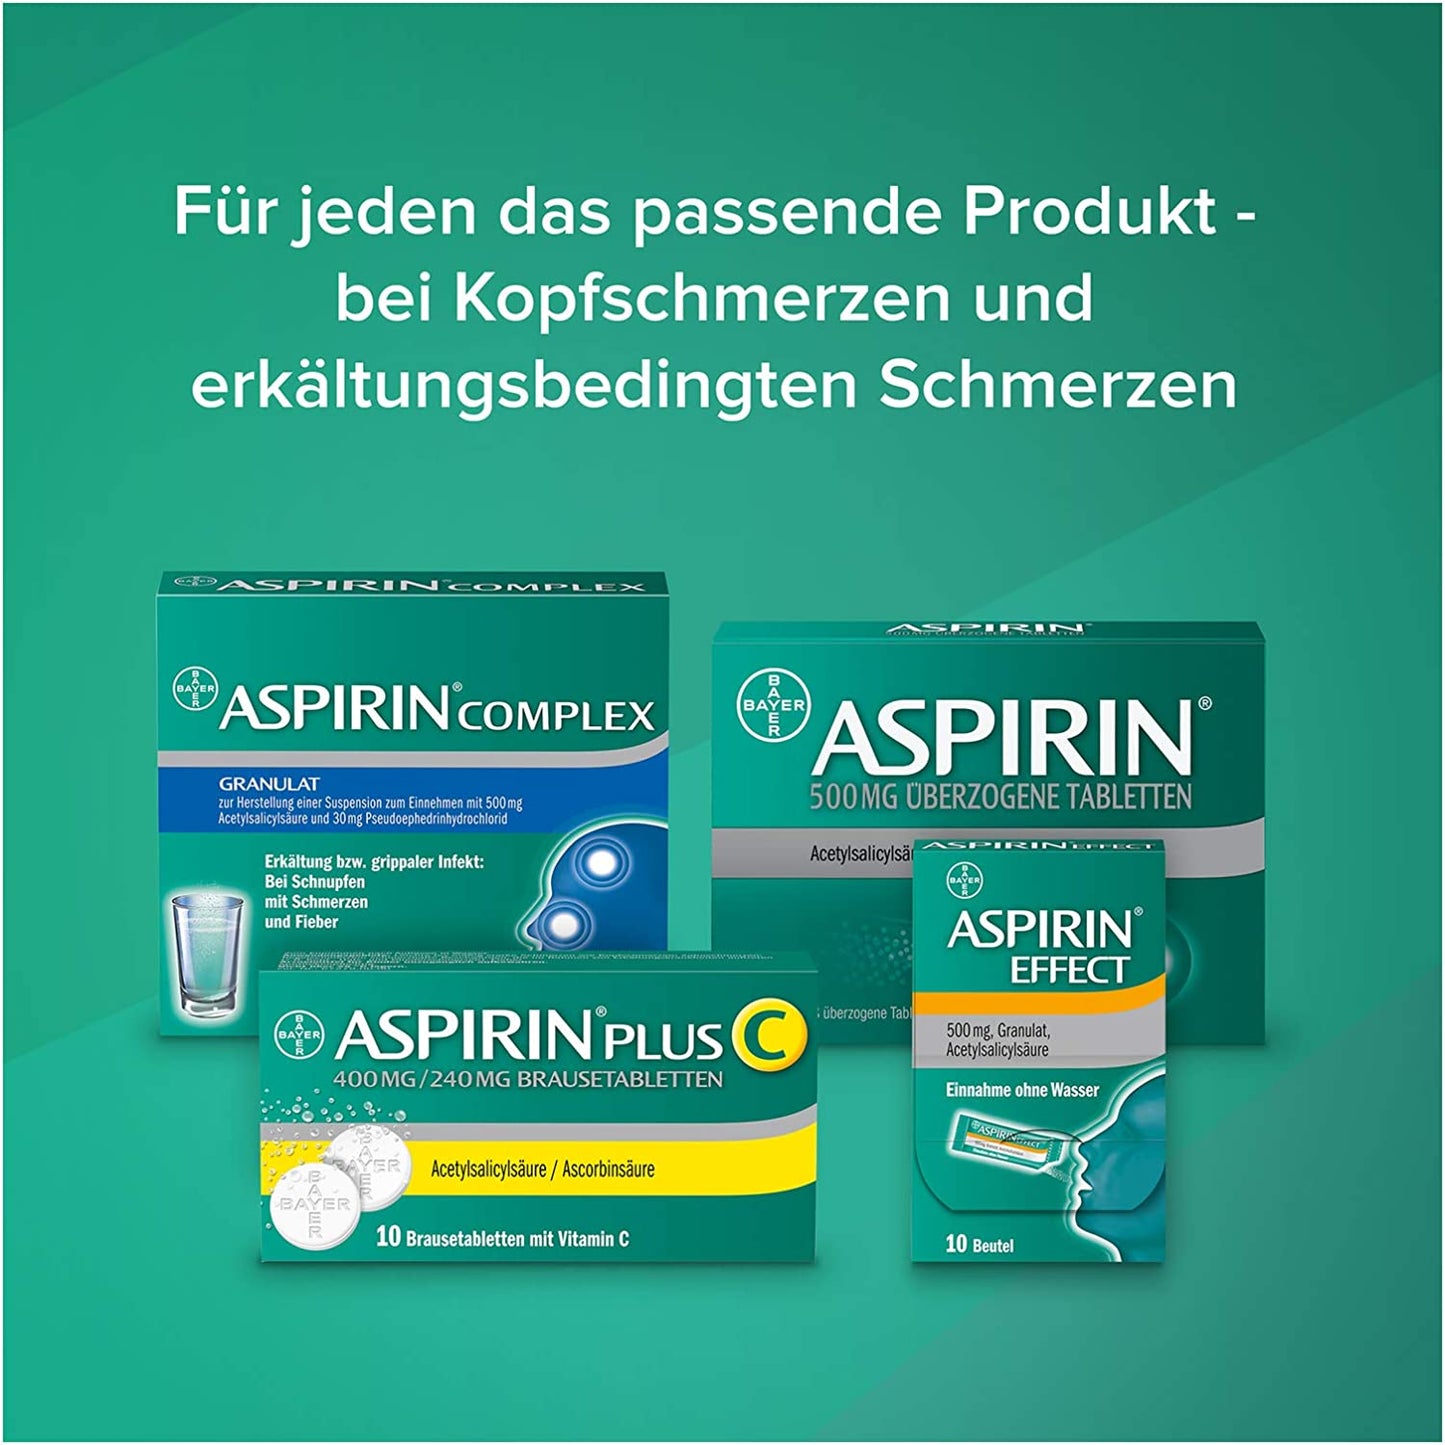 ASPIRIN 500mg überzogene Tabletten - bei leichten bis mäßig starken Kopfschmerzen